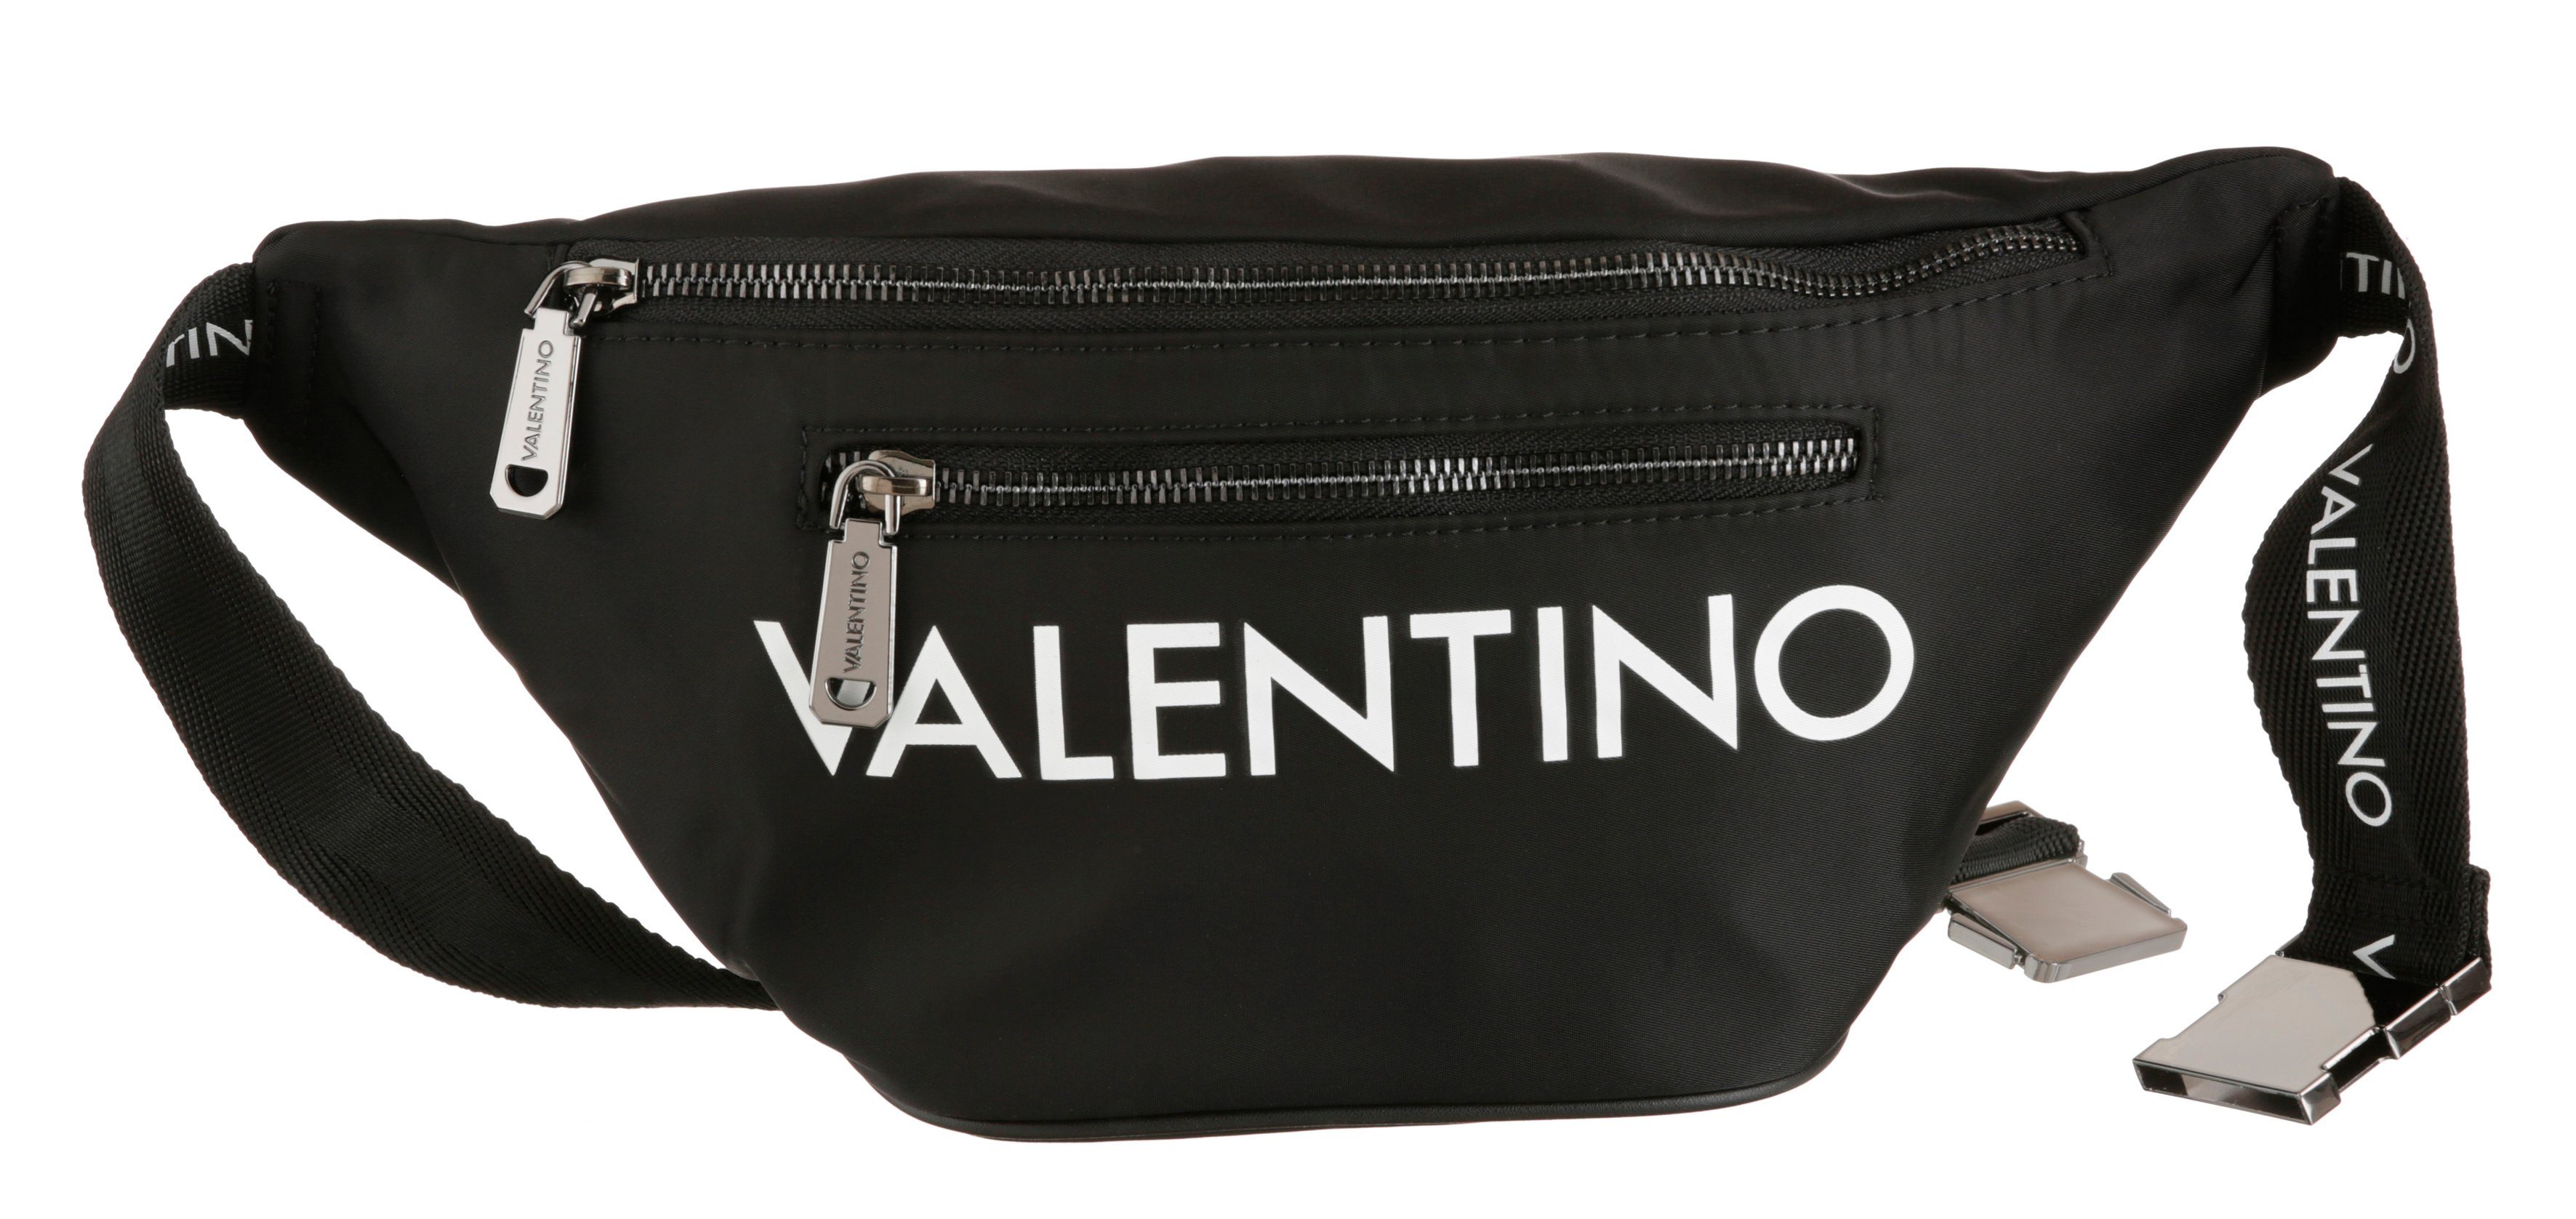 VALENTINO BAGS Bauchtasche, Logo auf dem Schriftzug Bauchgurt mit